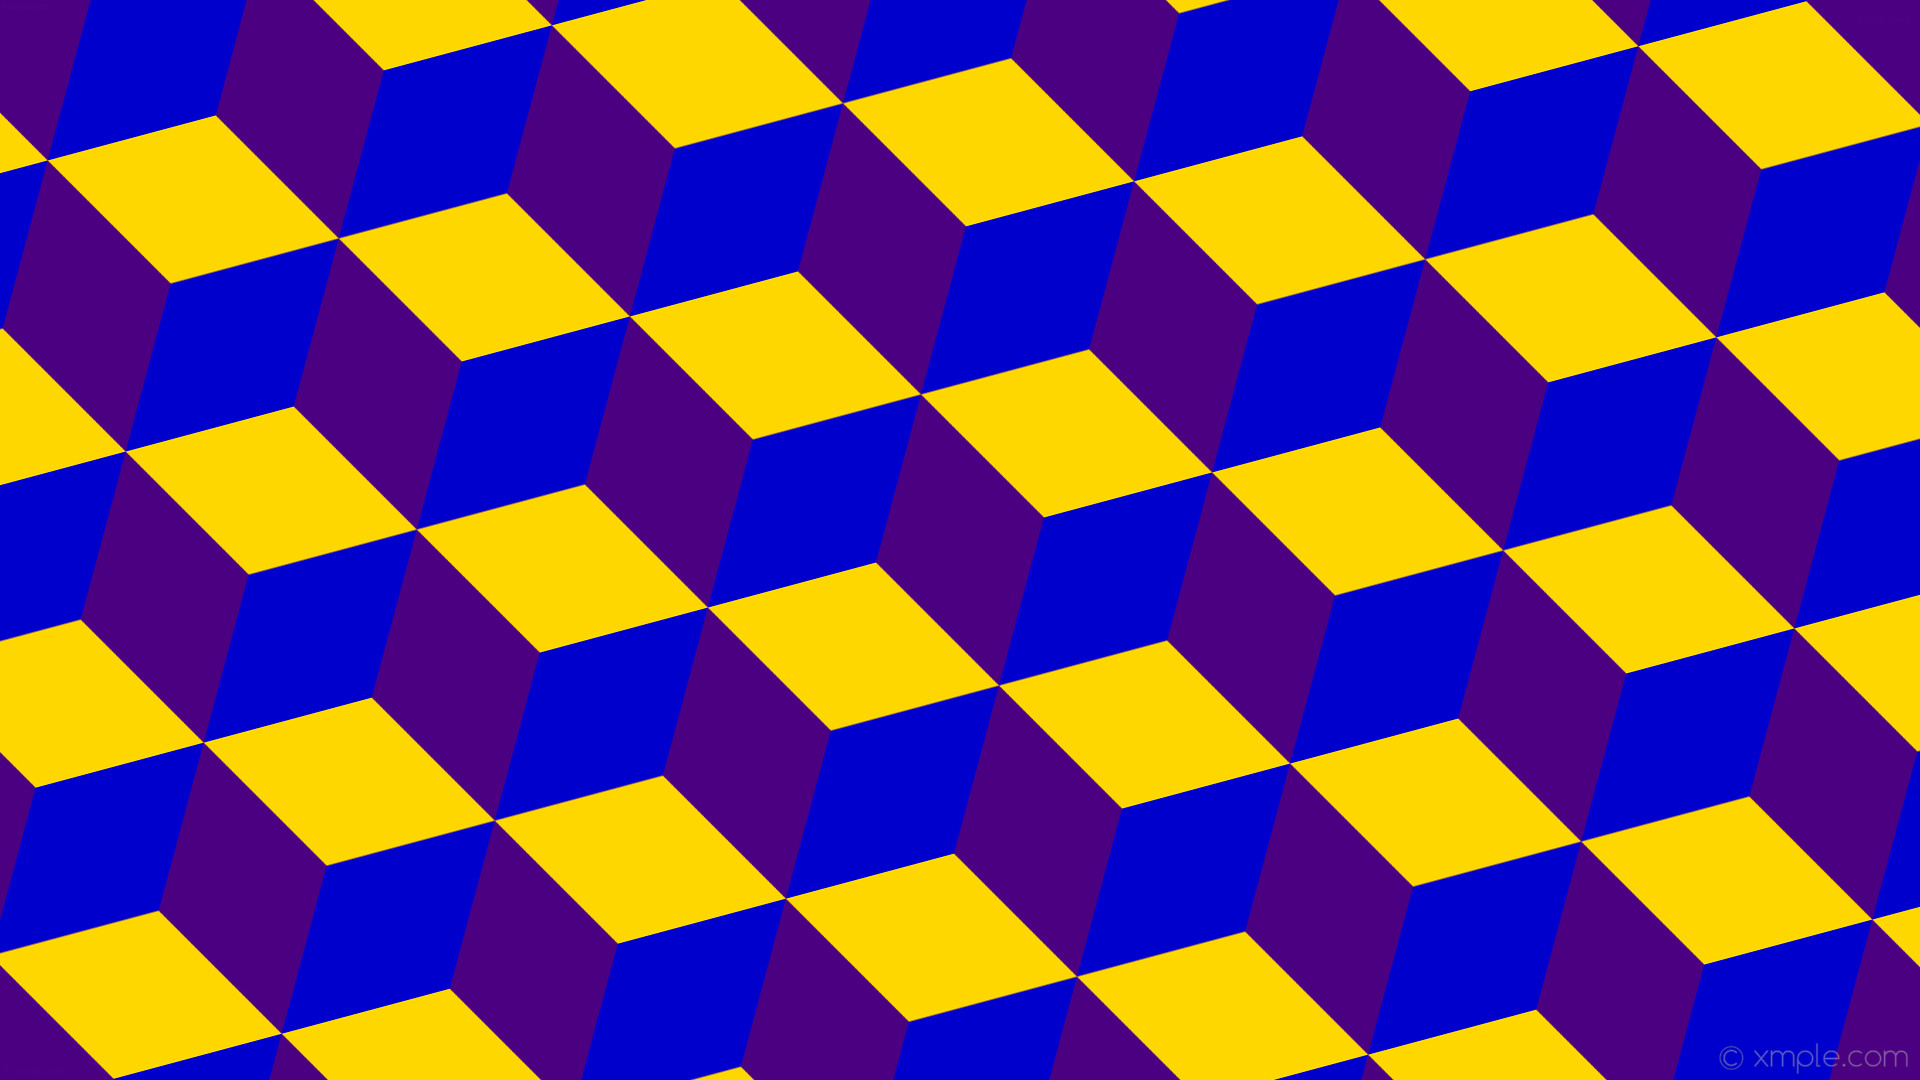 1920x1080 wallpaper purple blue 3d cubes yellow indigo medium blue gold #4b0082  #0000cd #ffd700